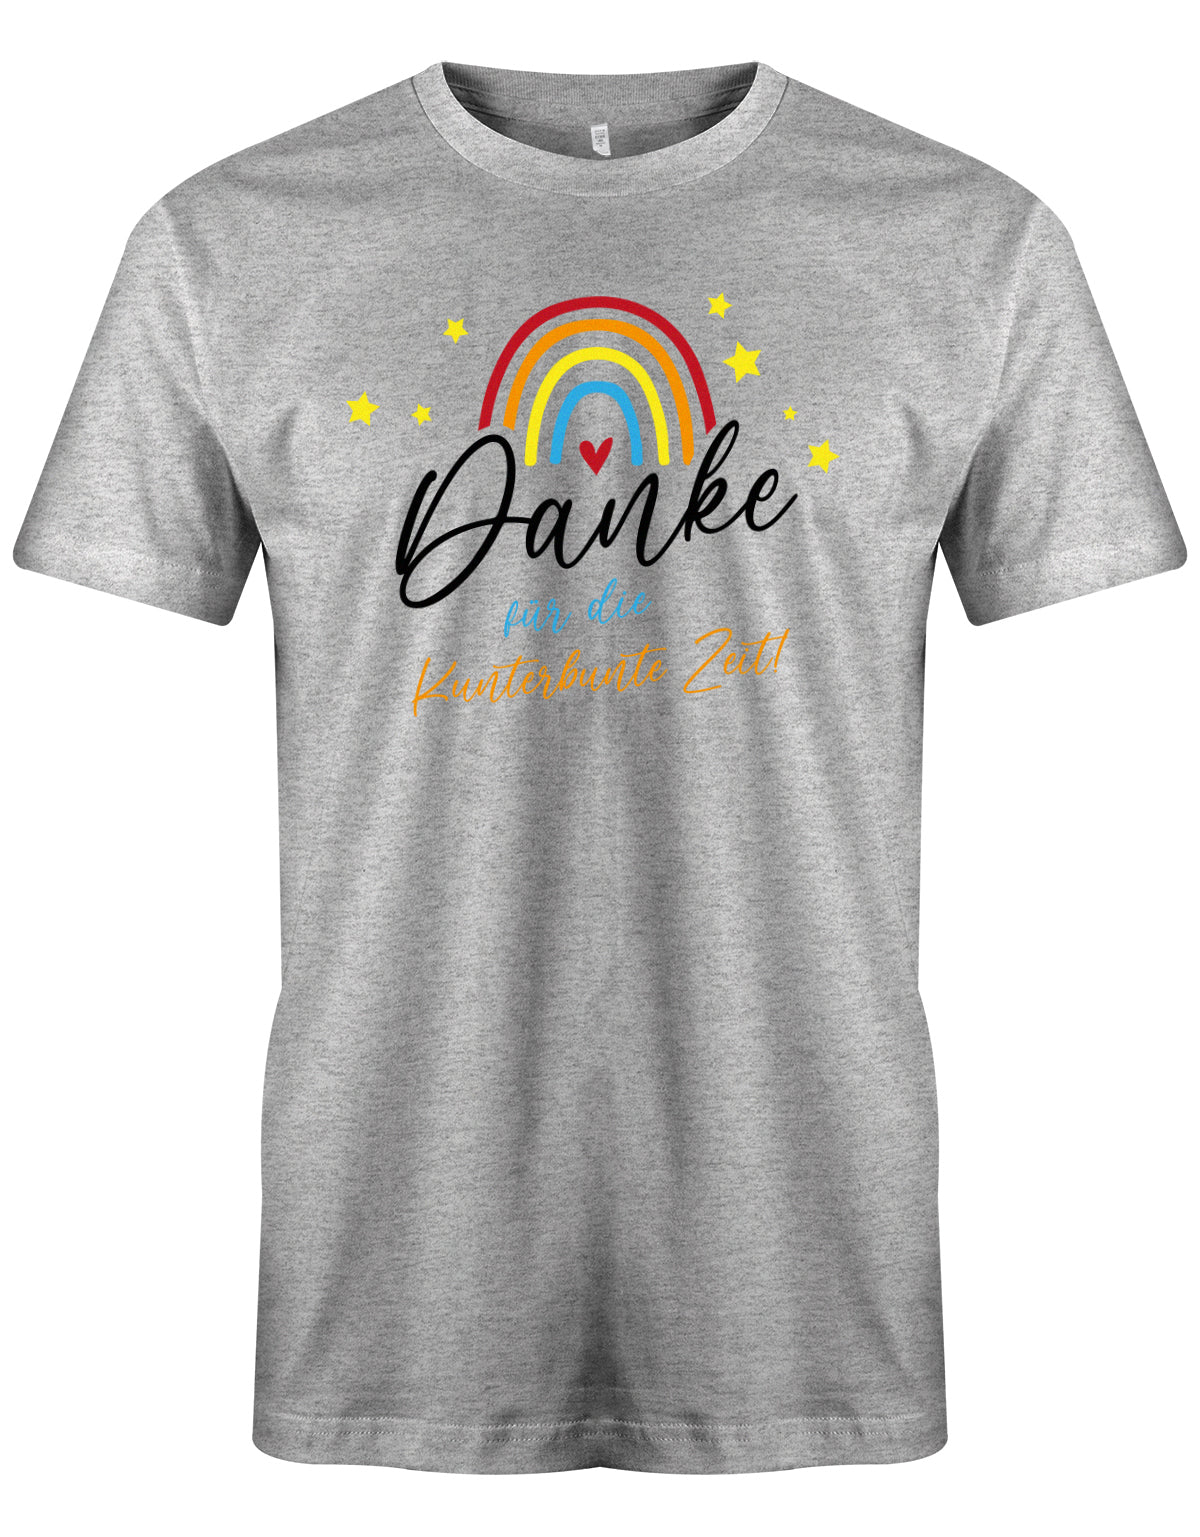 Danke für die Kunterbunter Zeit - Regenbogen - Erzieher Geschenk T-Shirt Grau